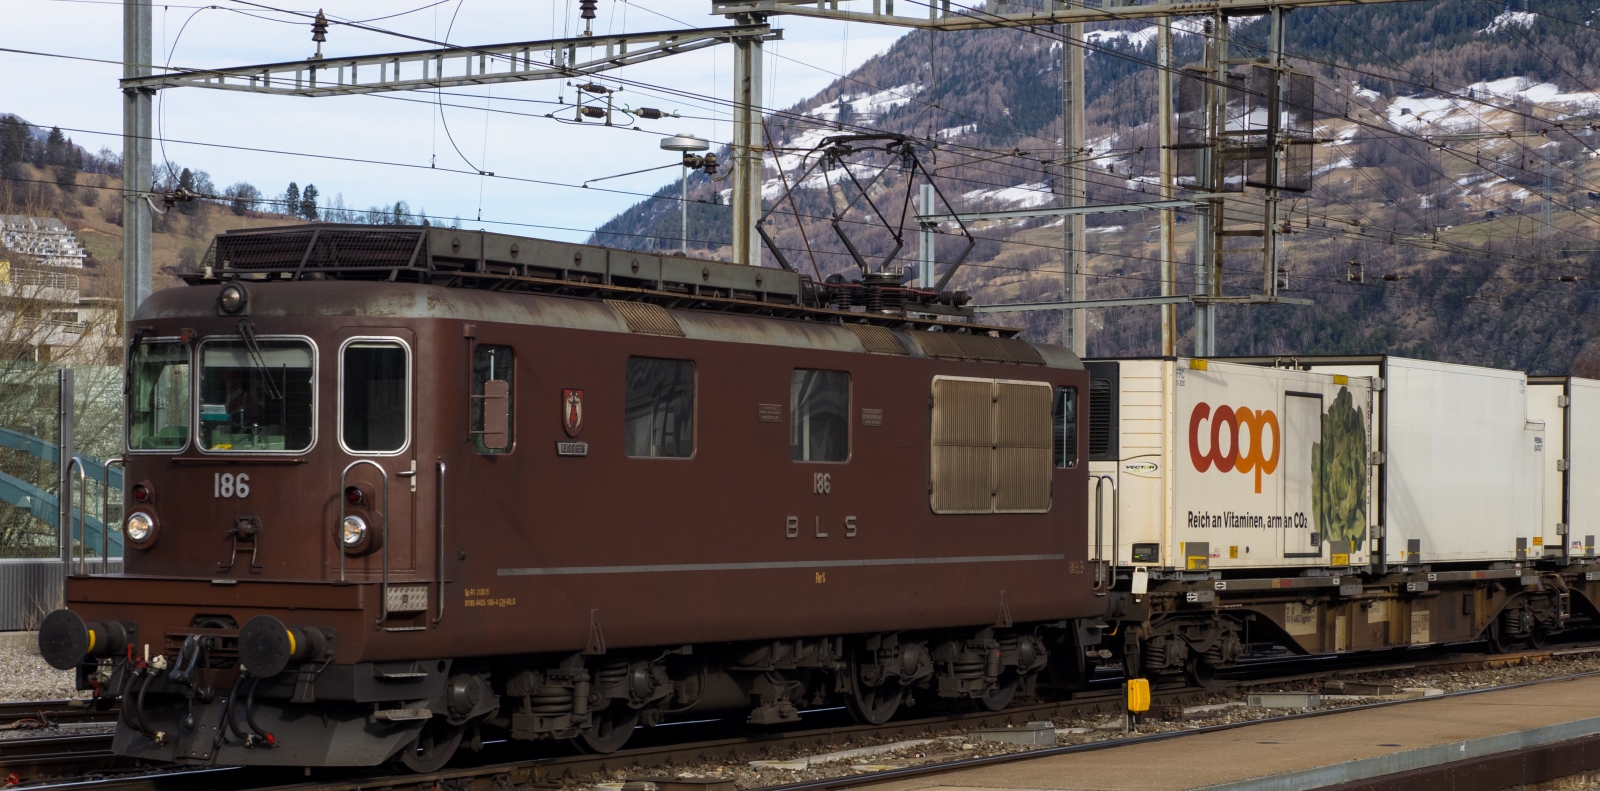 Re 425 186 “Leissigen” in February 2016 in Brig